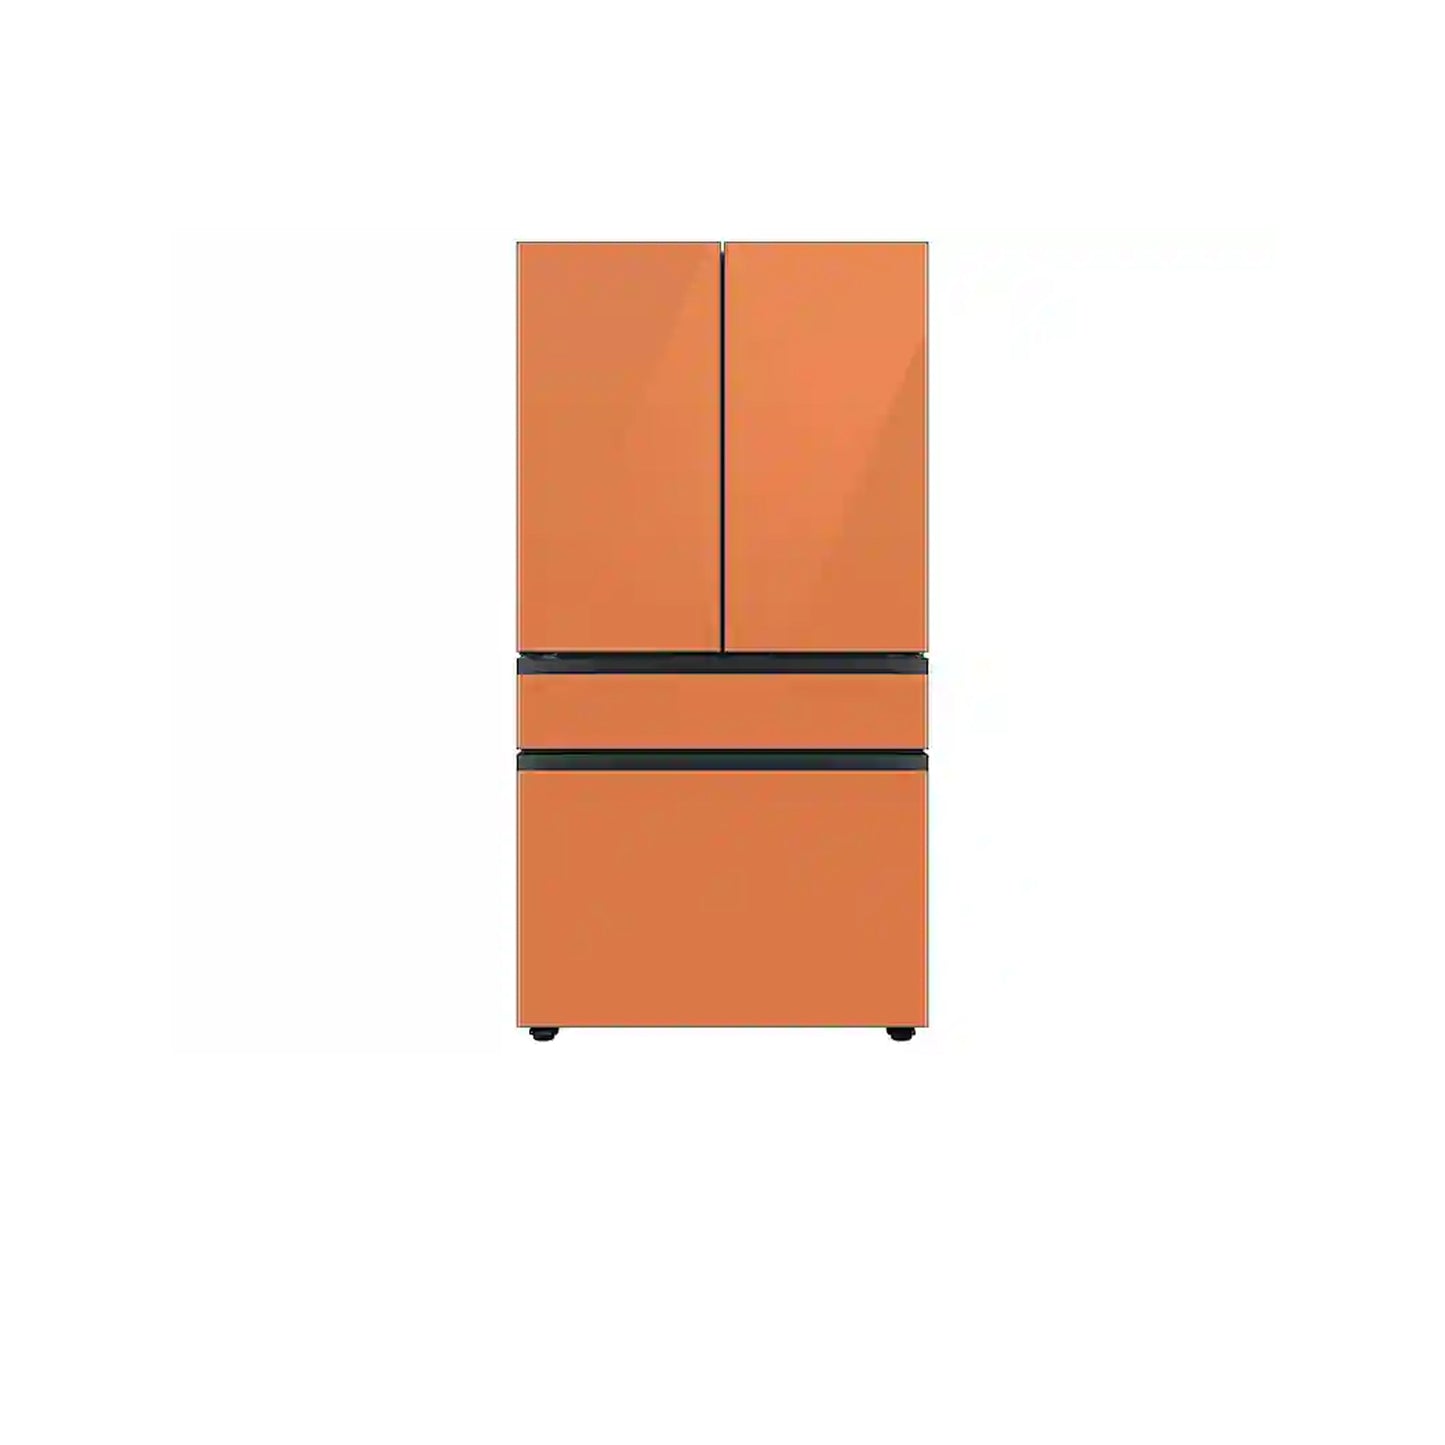 Bespoke 4-Door French Door Refrigerator (23 cu. ft.) with Customizable Door Panel Colors and Beverage Center™ in Rose Pink Glass.